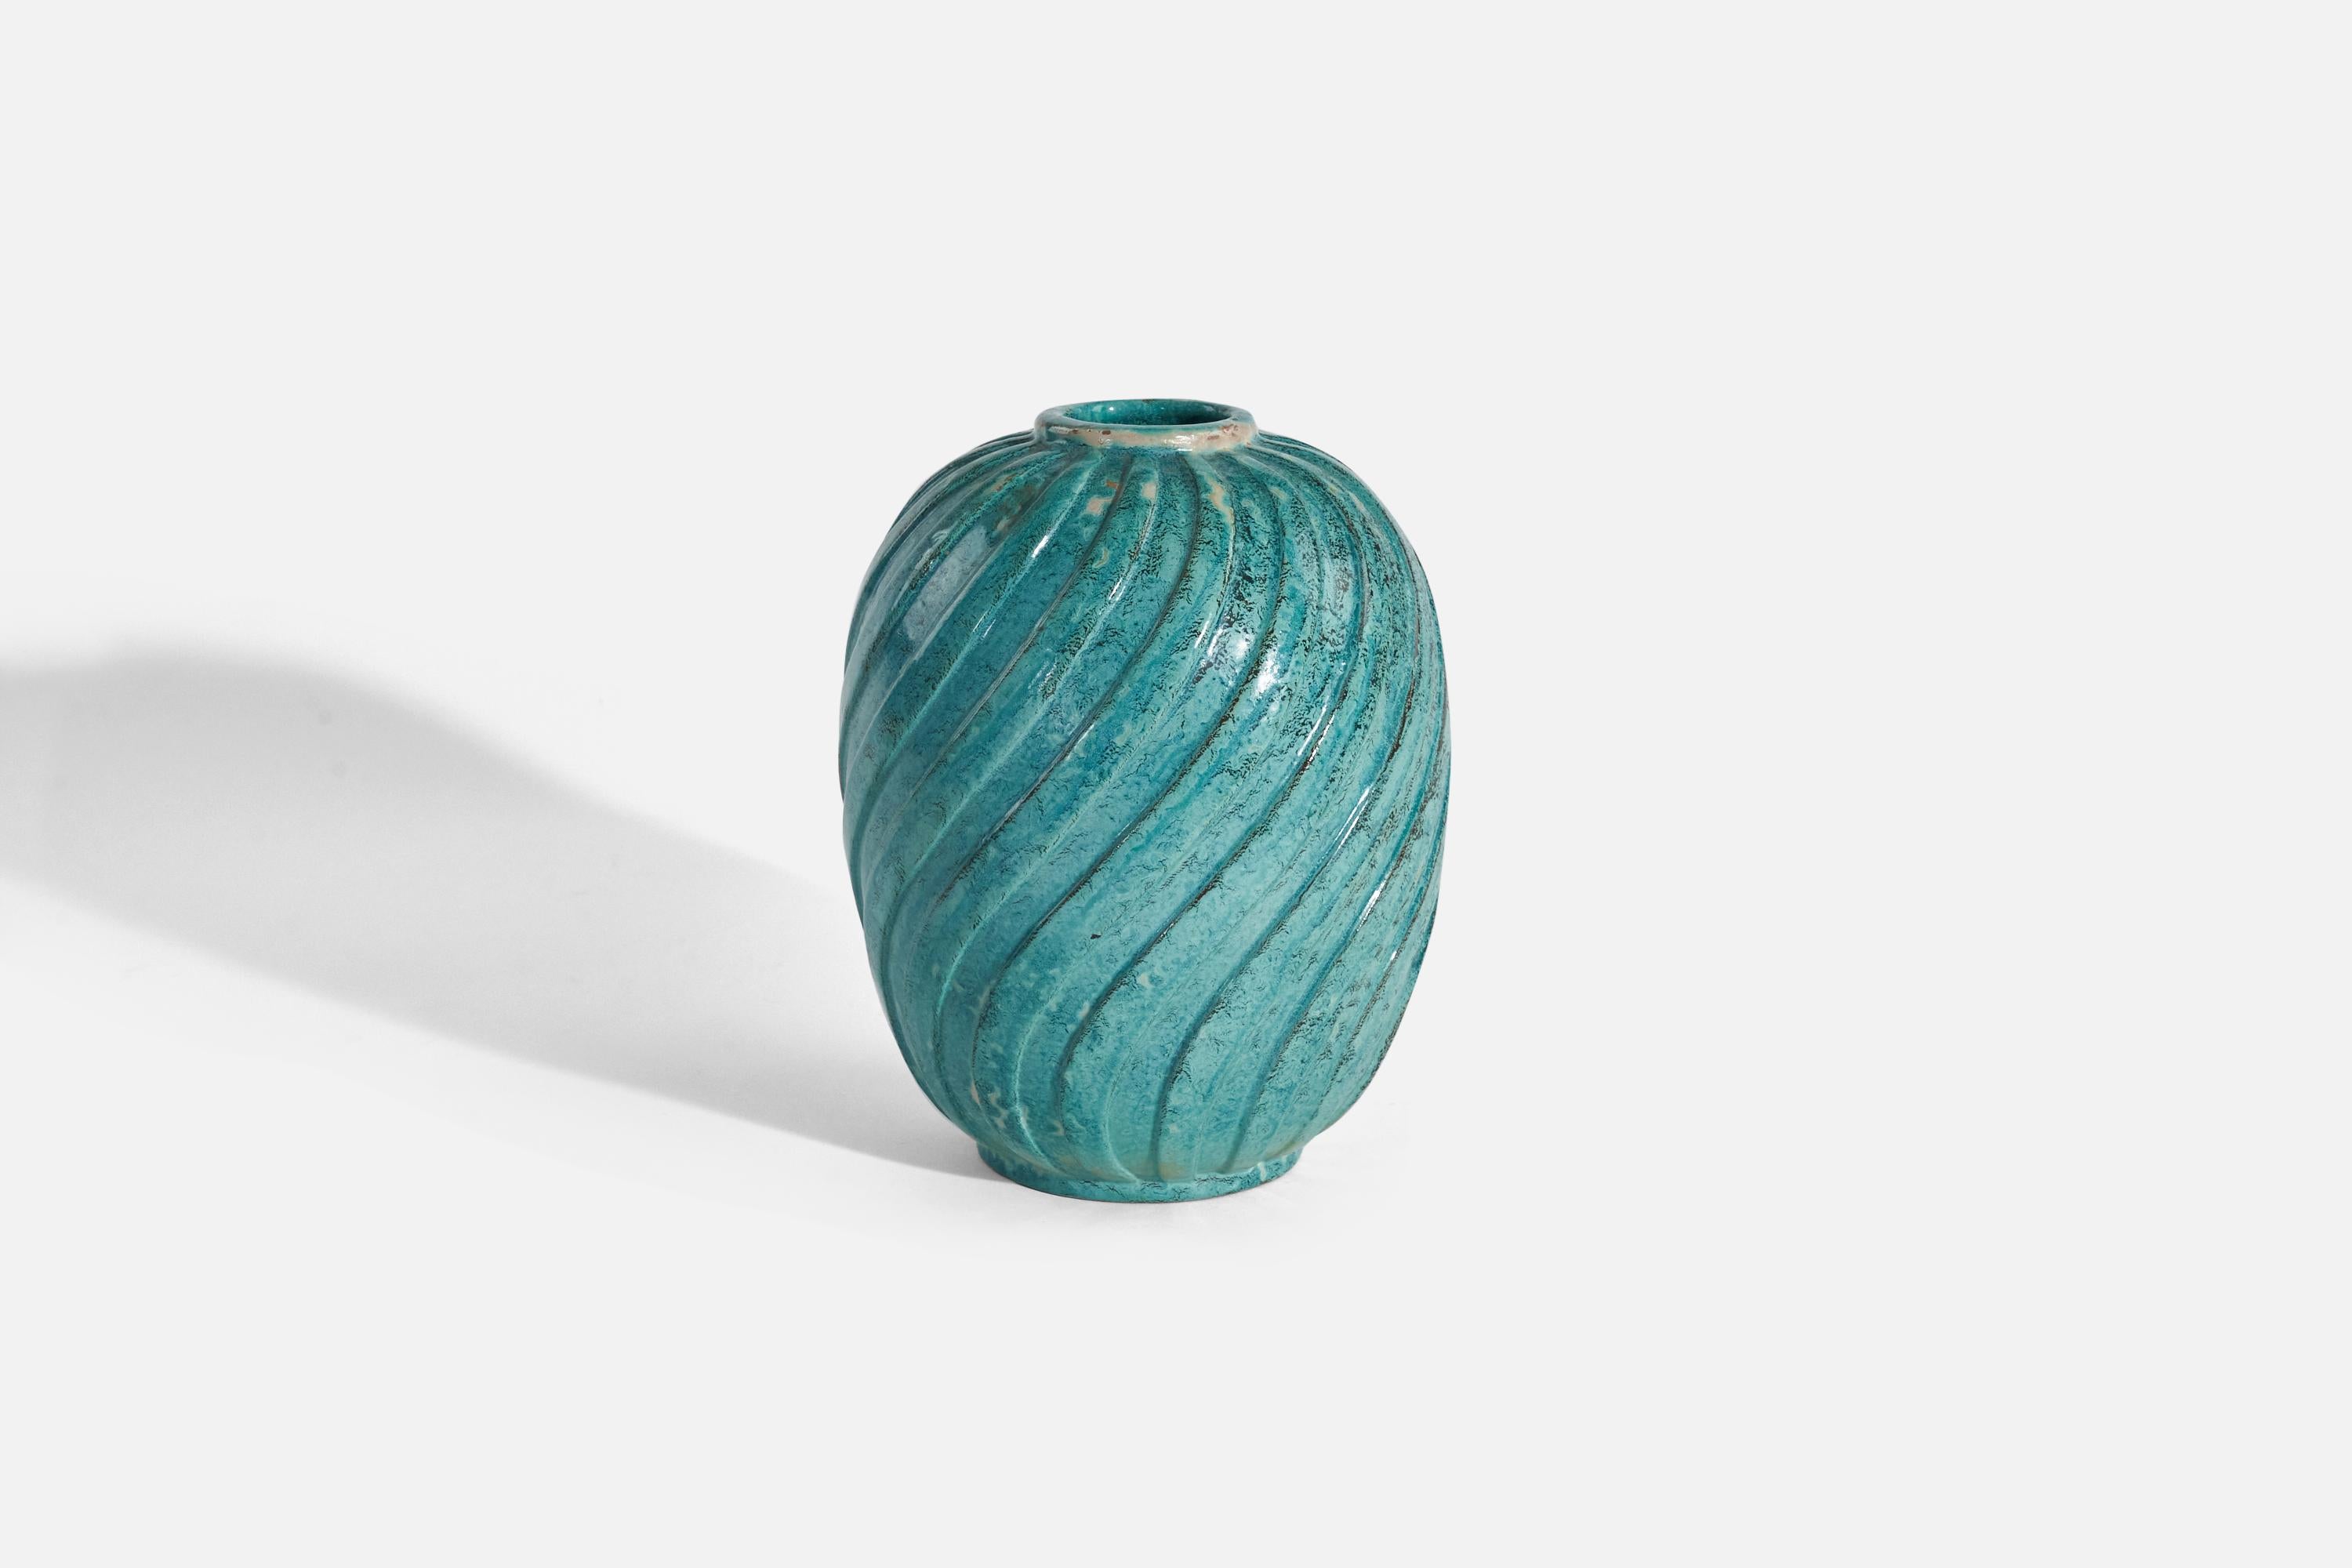 An aquamarine blue, glazed earthenware vase designed and produced by Upsala-Ekeby, Sweden, c. 1940s.

